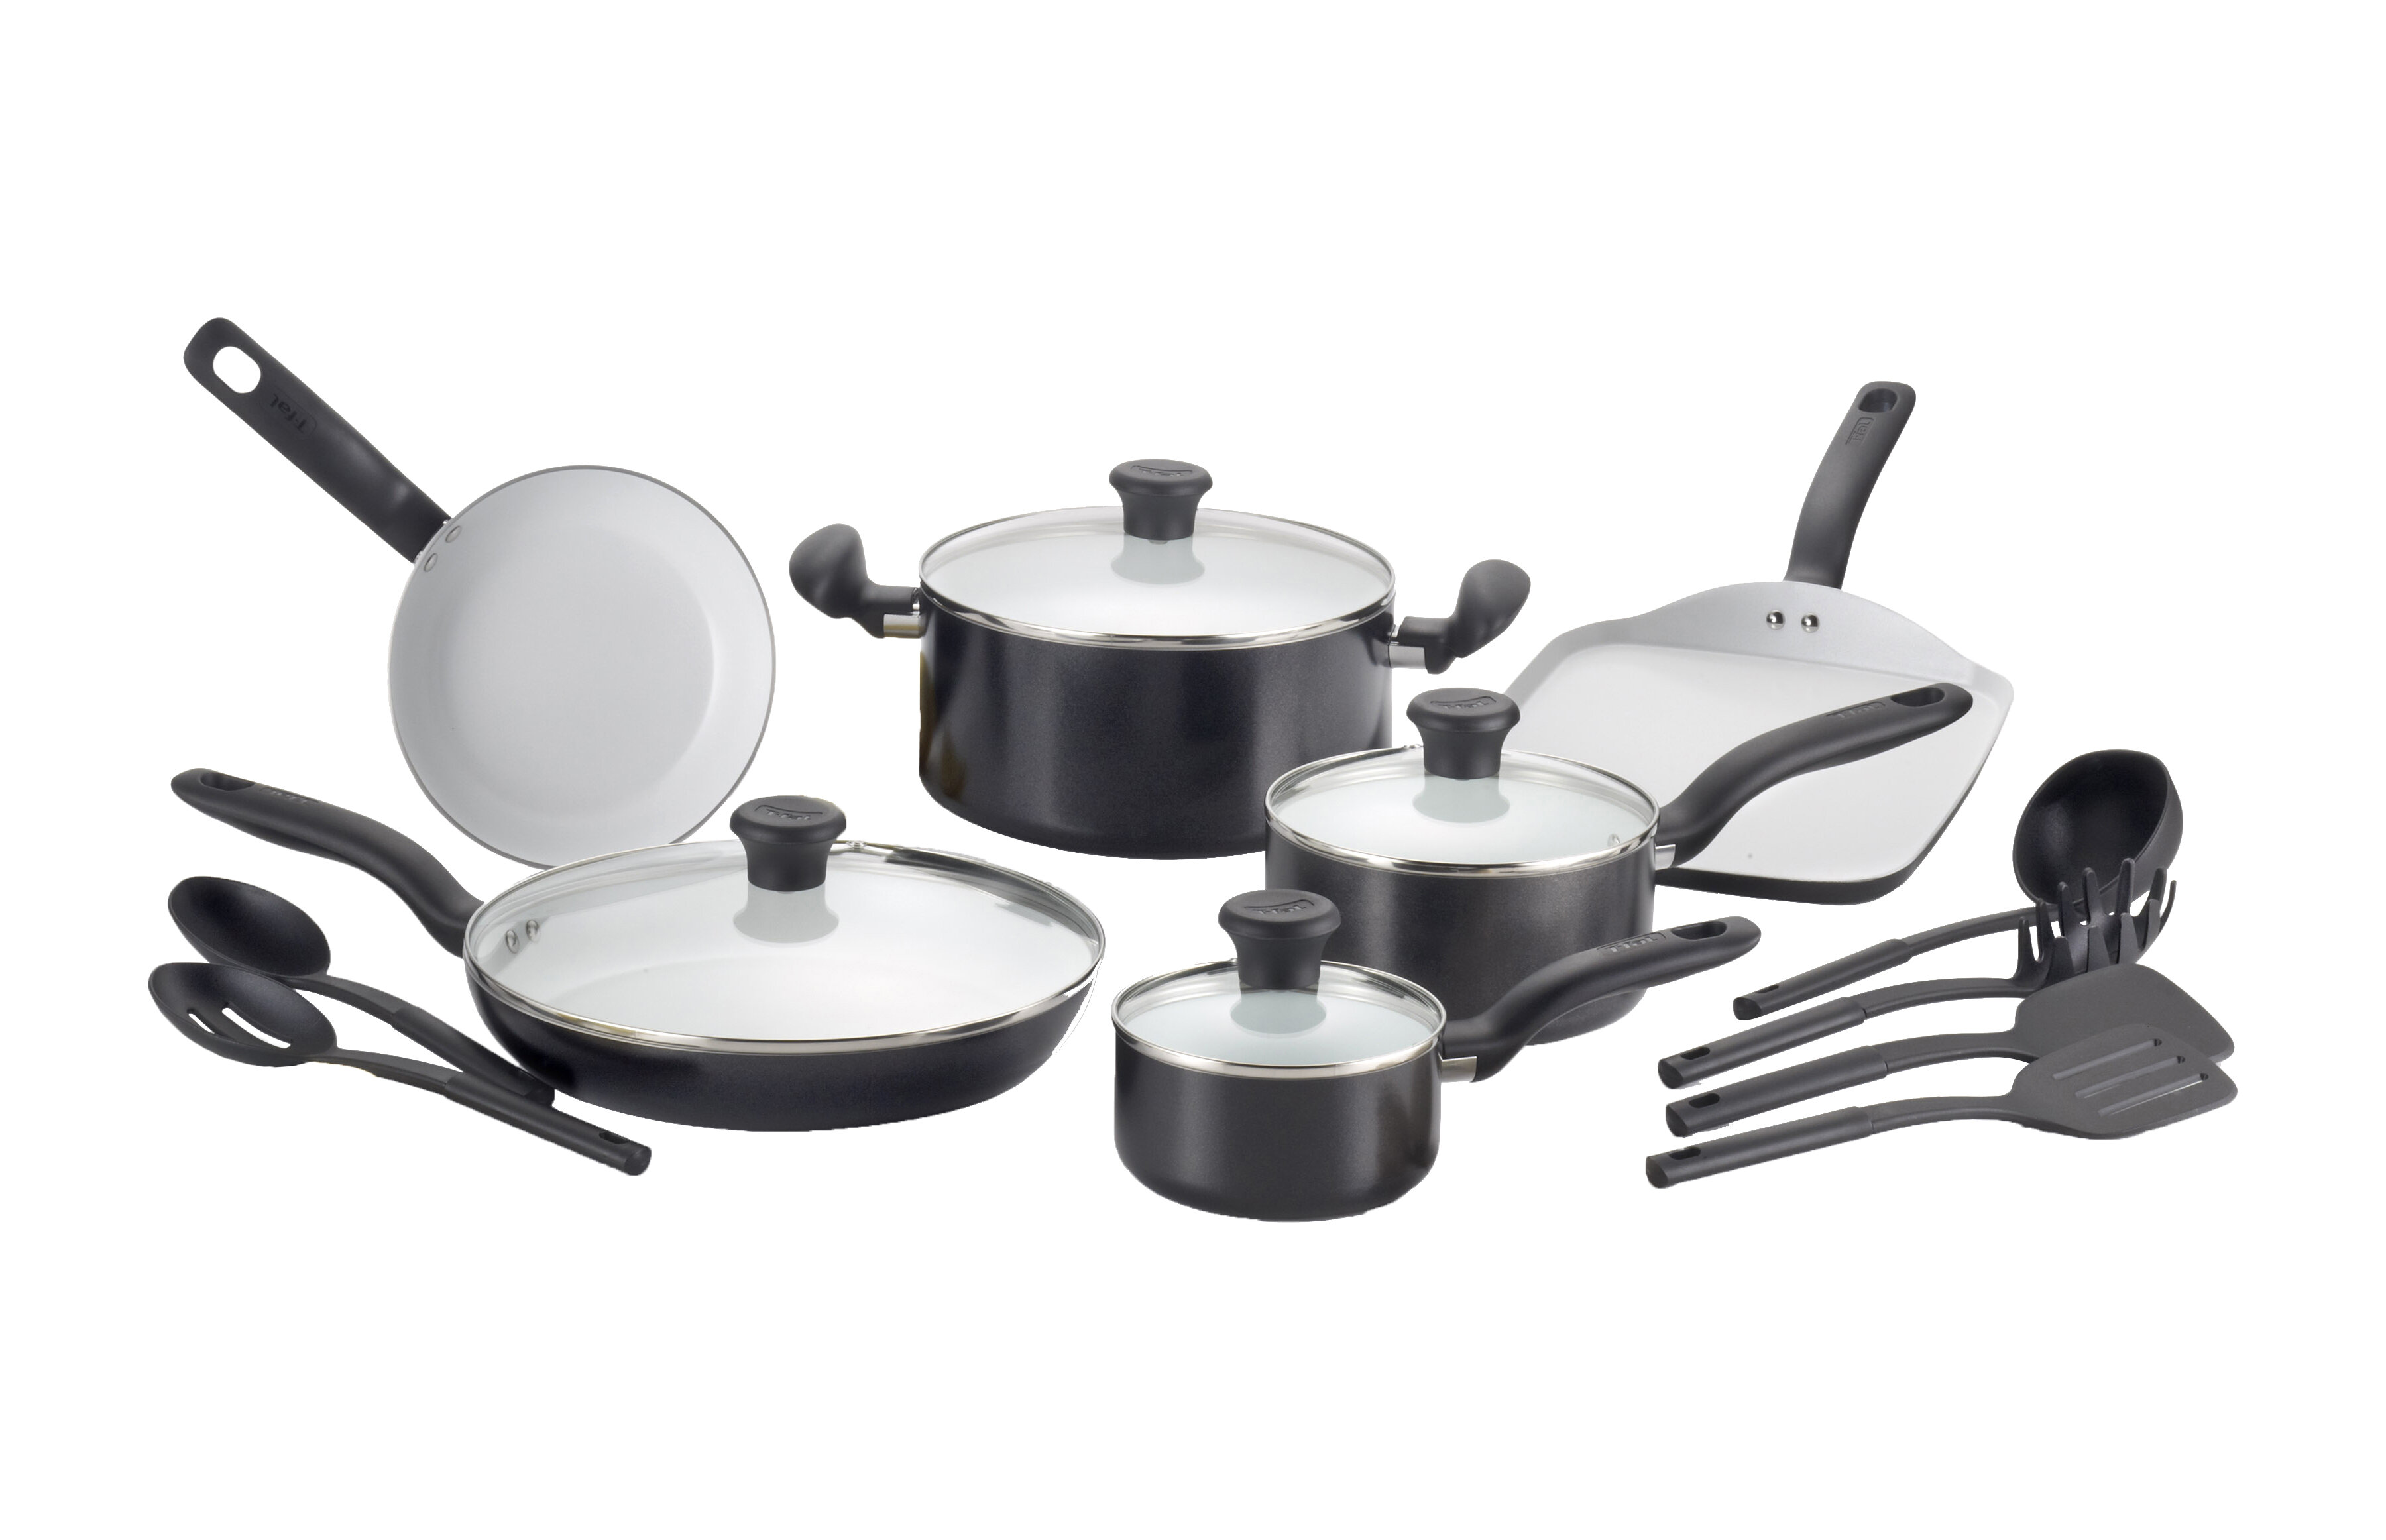 https://assets.wfcdn.com/im/16910186/compr-r85/1541/15419778/t-fal-initiatives-nonstick-aluminum-cookware-set-cooking-utensils-16-piece.jpg